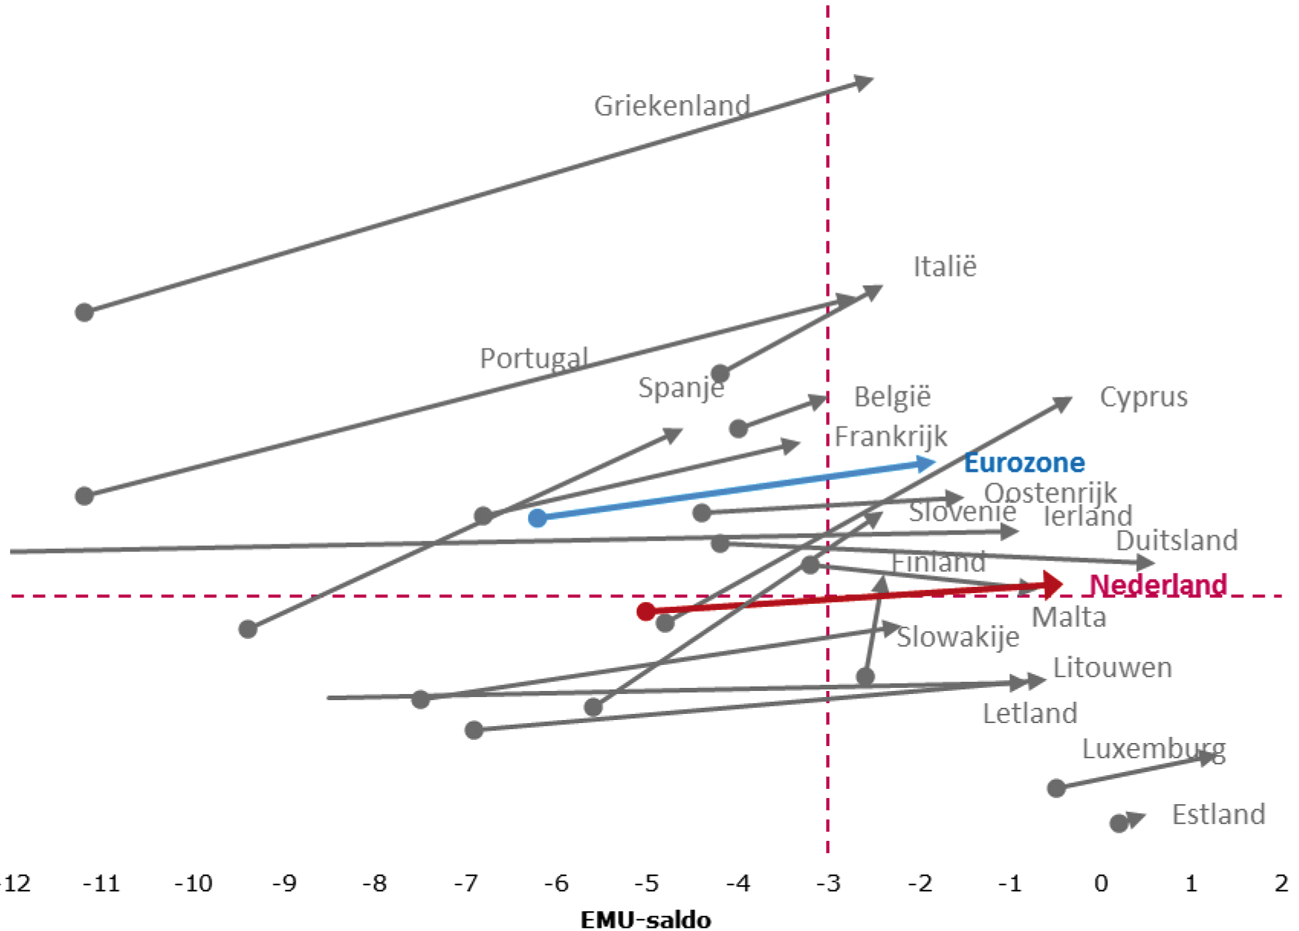 Figuur: EMU-saldo en EMU-schuld in de eurozone van 2010 naar 2016 (in procenten bbp)